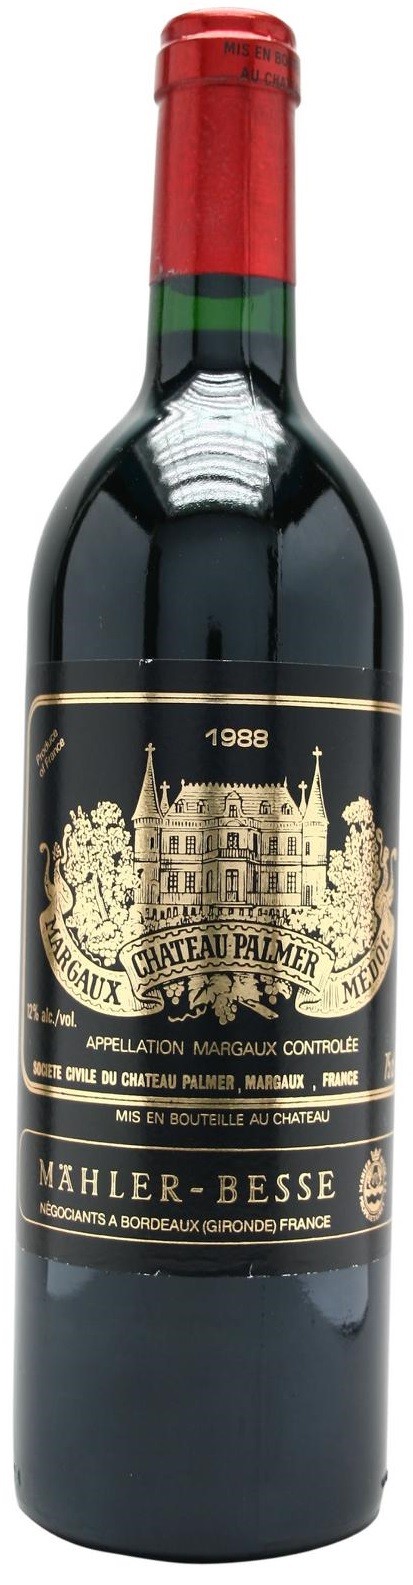 Chateau Palmer 1979, Margaux